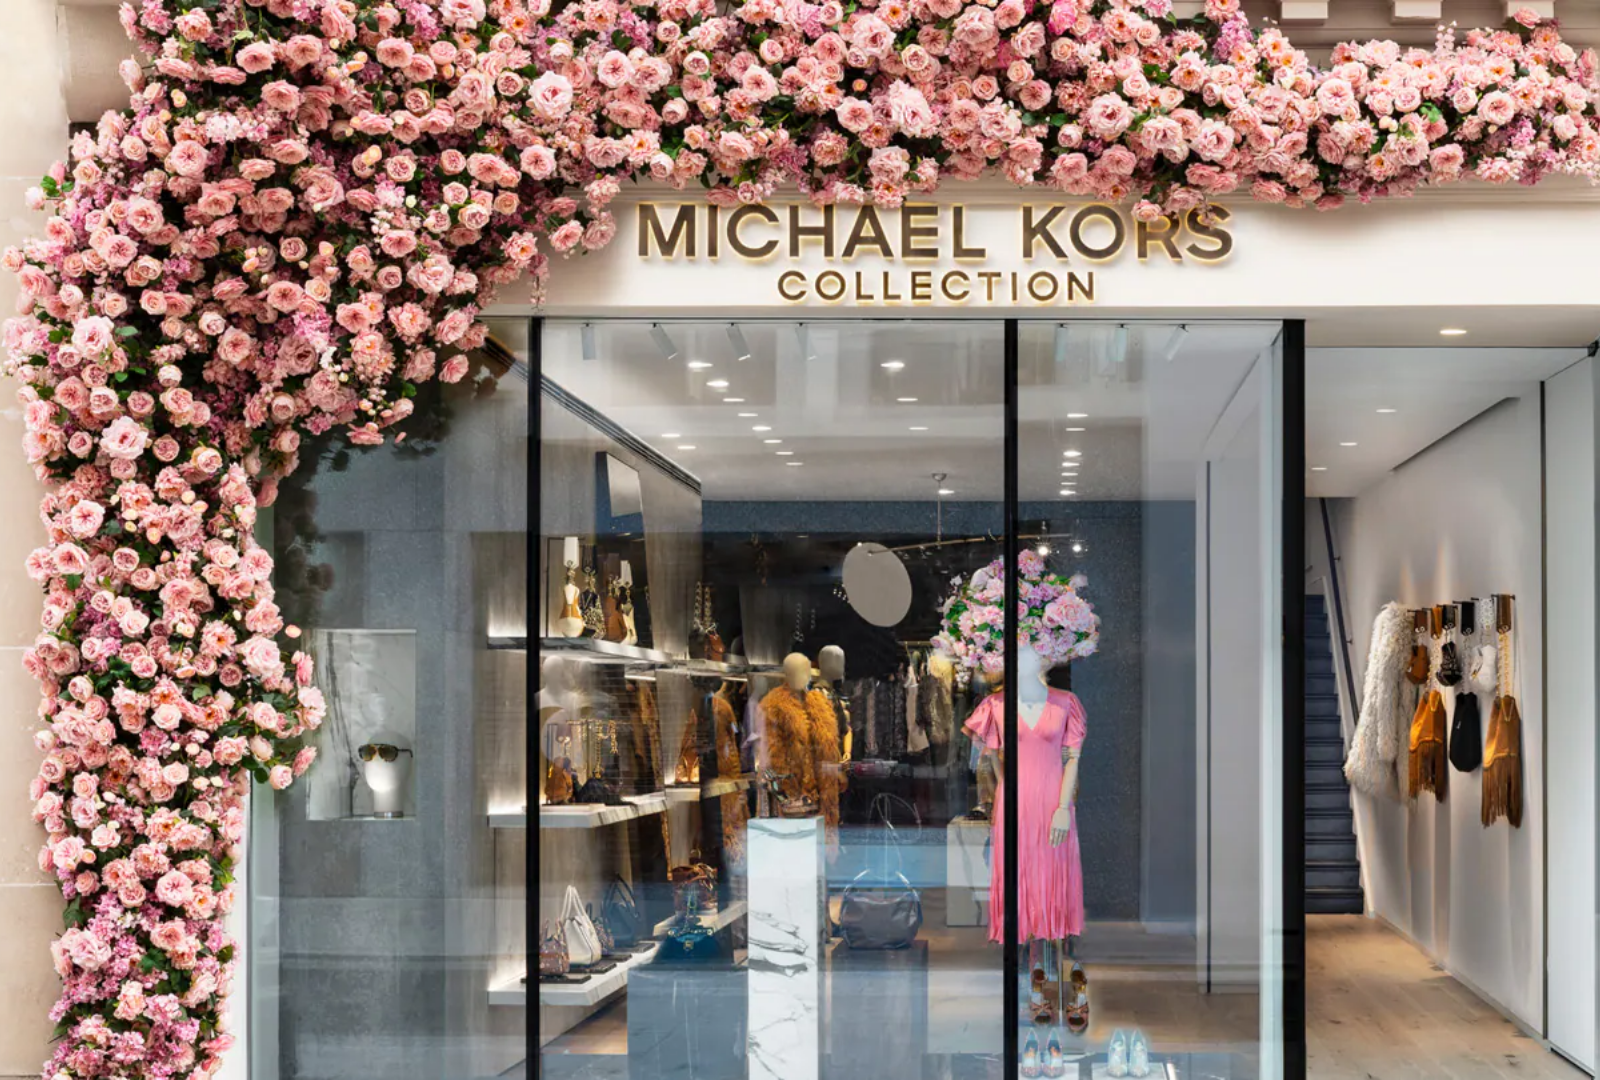 Michael kors - ShopUSA India Michael kors shopping